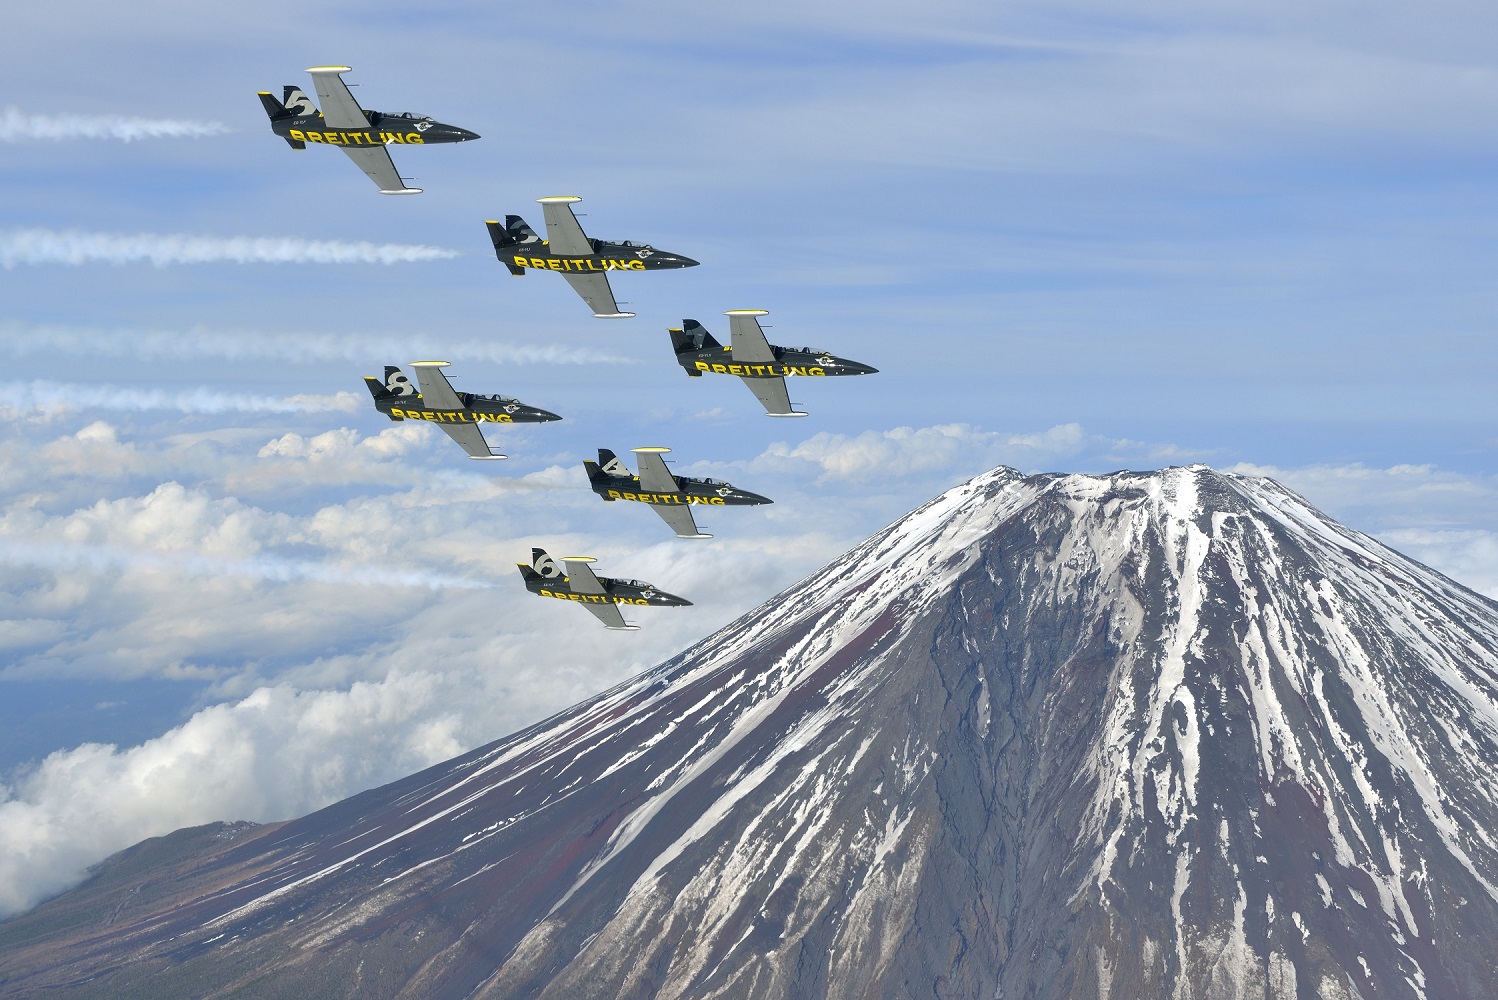 Breitling Jet Team Over Mt. Fuji ( Image Credit Tokunaga)